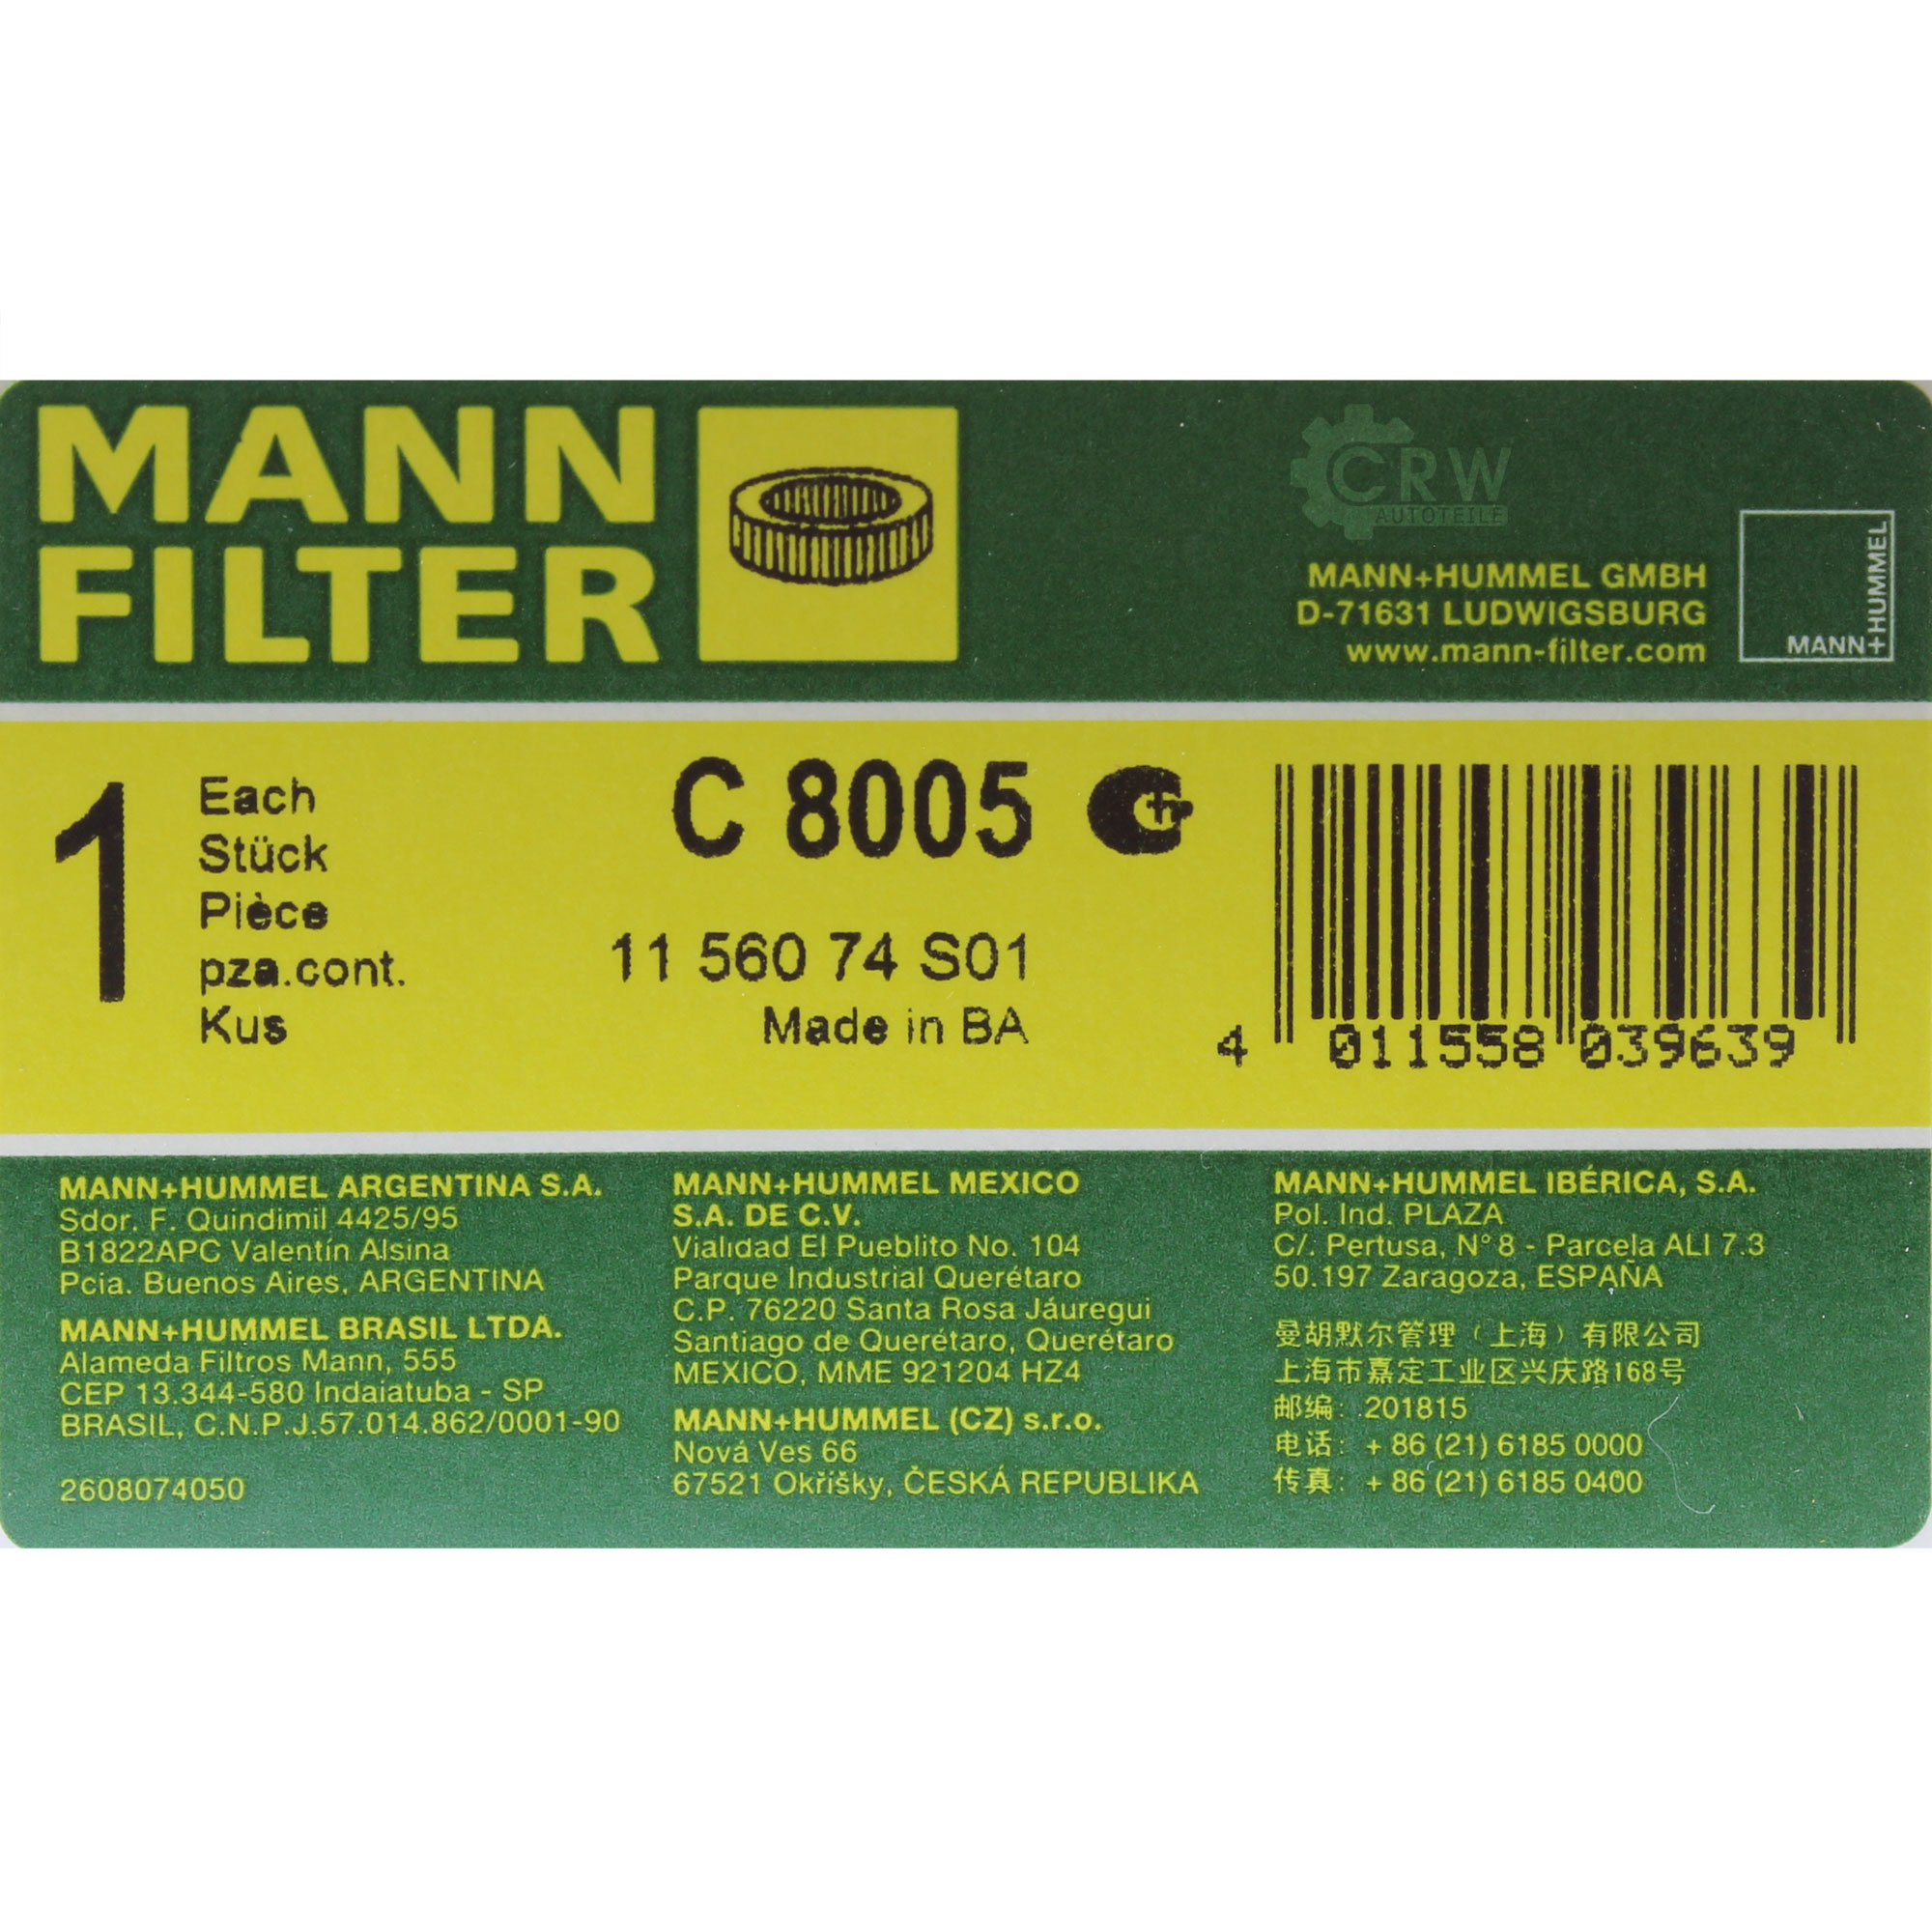 MANN-FILTER Luftfilter C 8005